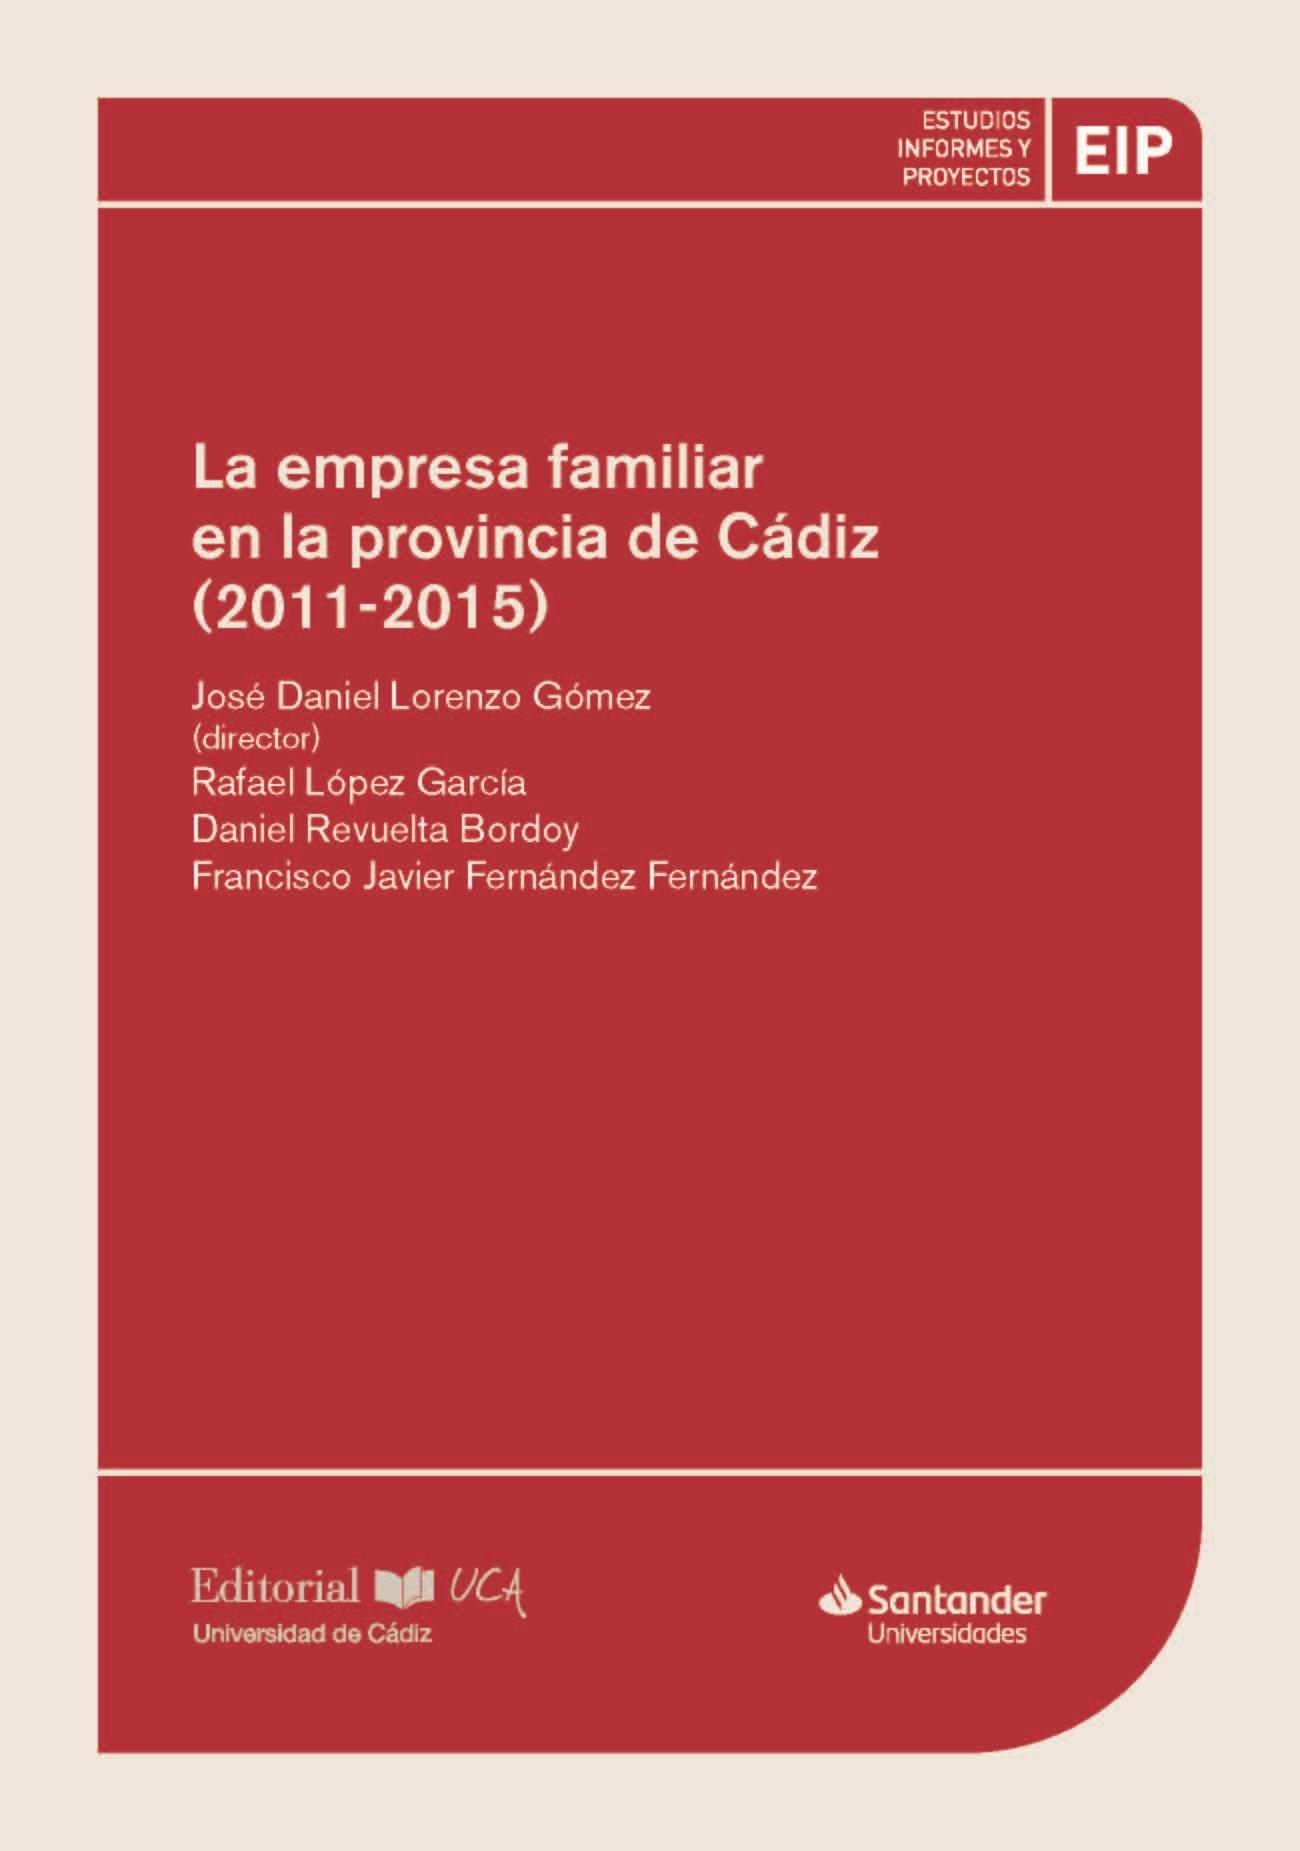 La empresa familiar en la provincia de Cádiz (2011-2015)